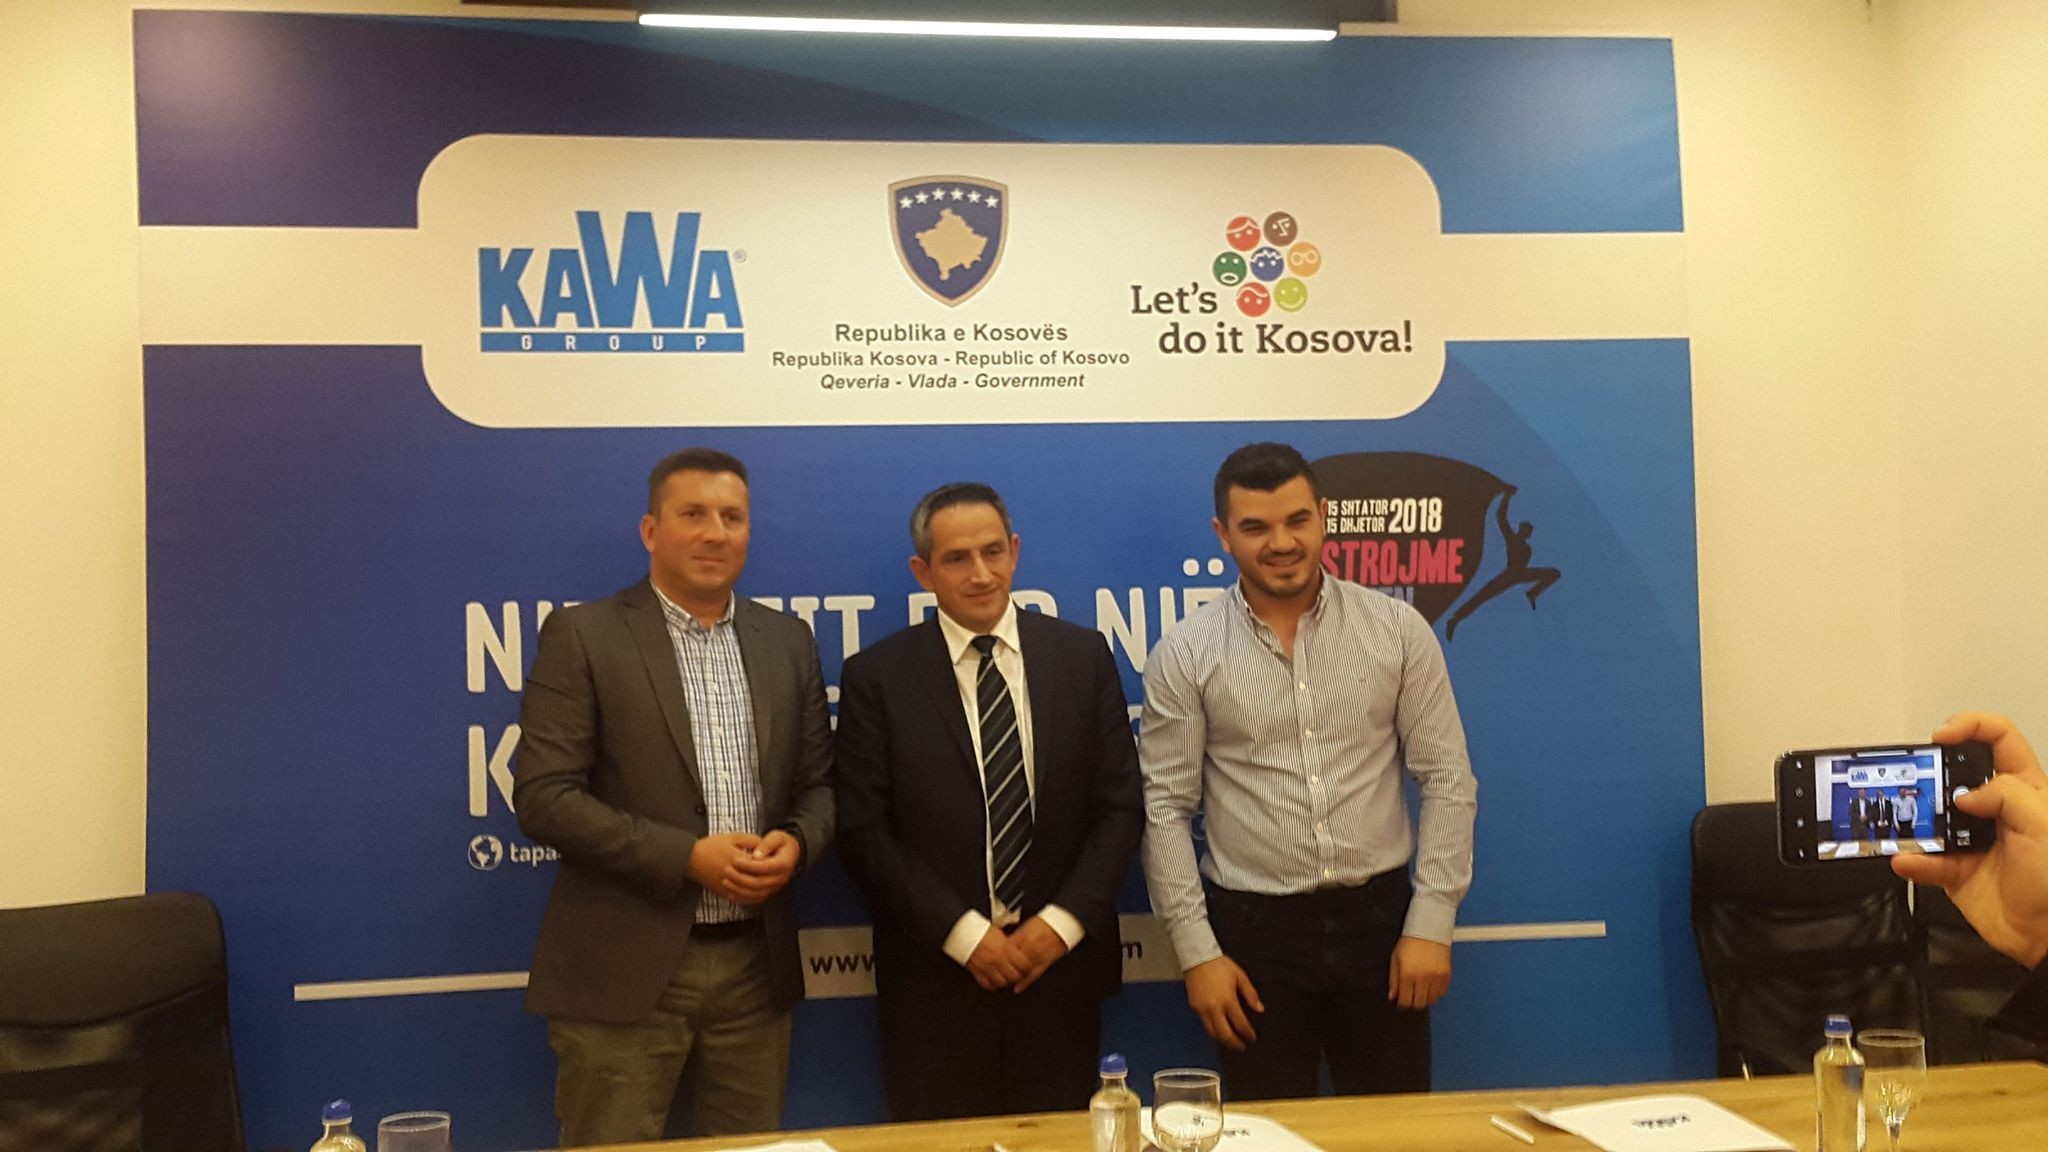 Kawa Group i bashkohet aksionit Ta Pastrojmë Kosovën